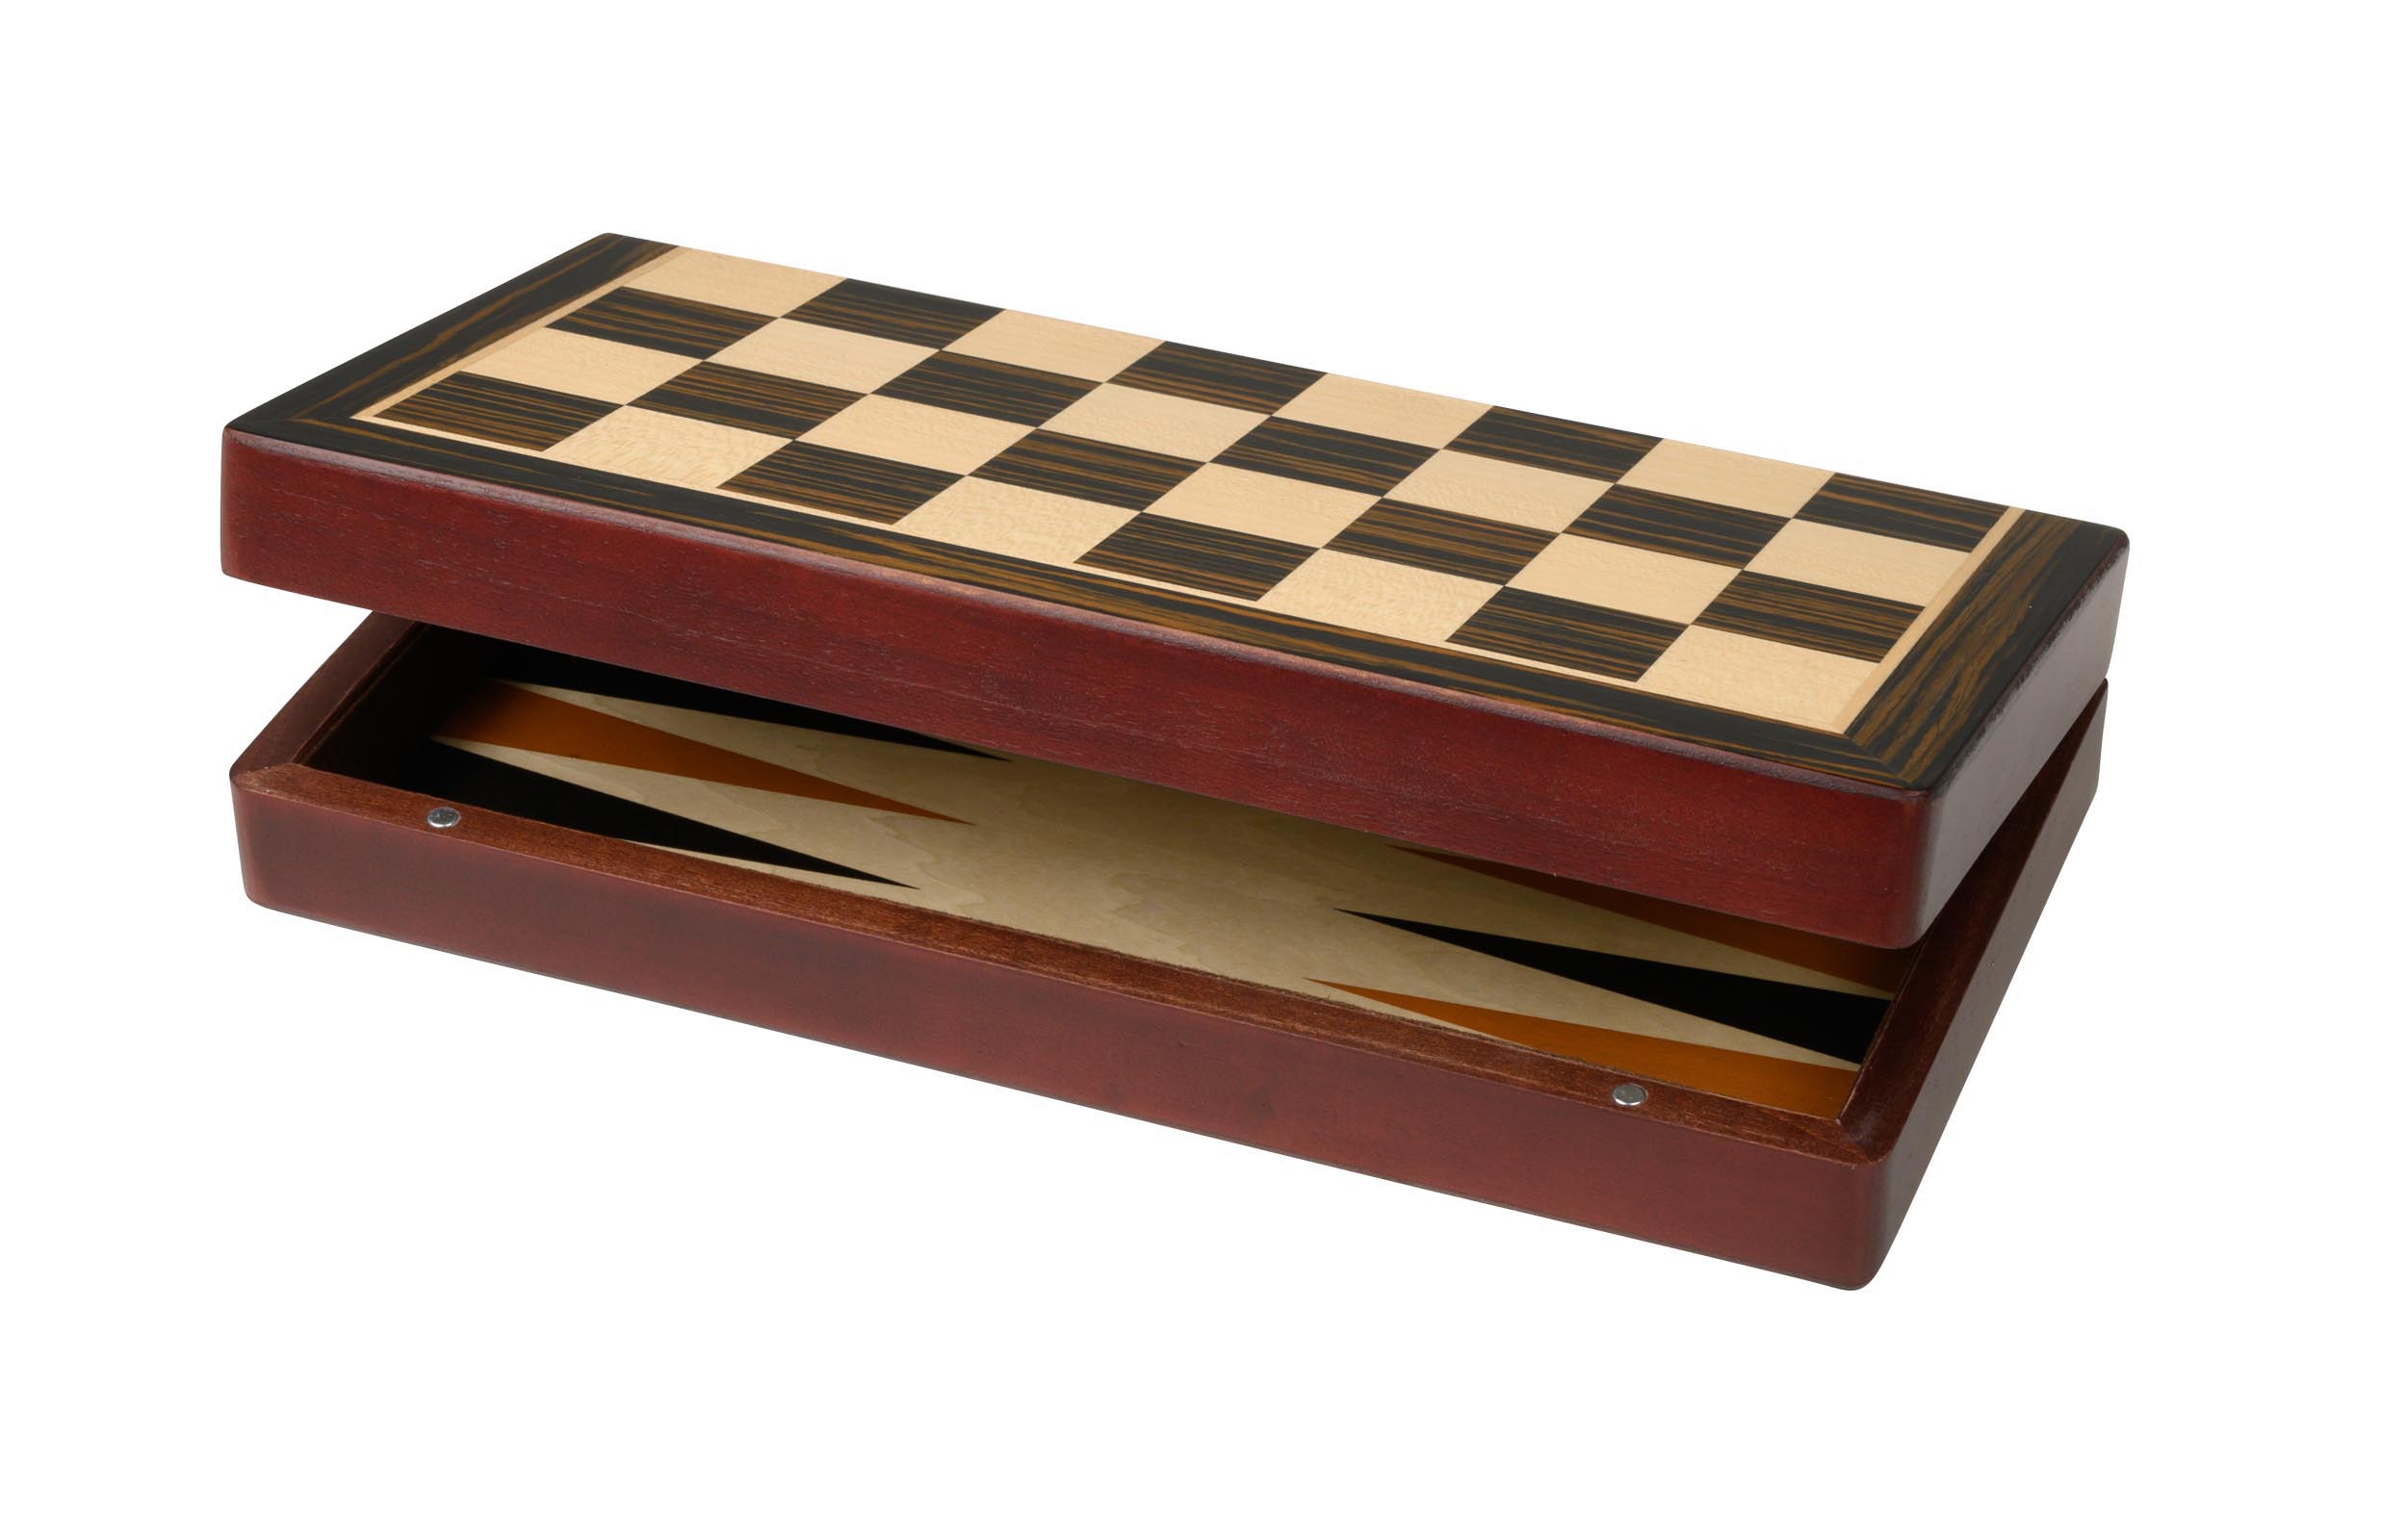 Schach Backgammon Dame Set, Feld 30 mm, Magnetverschluss